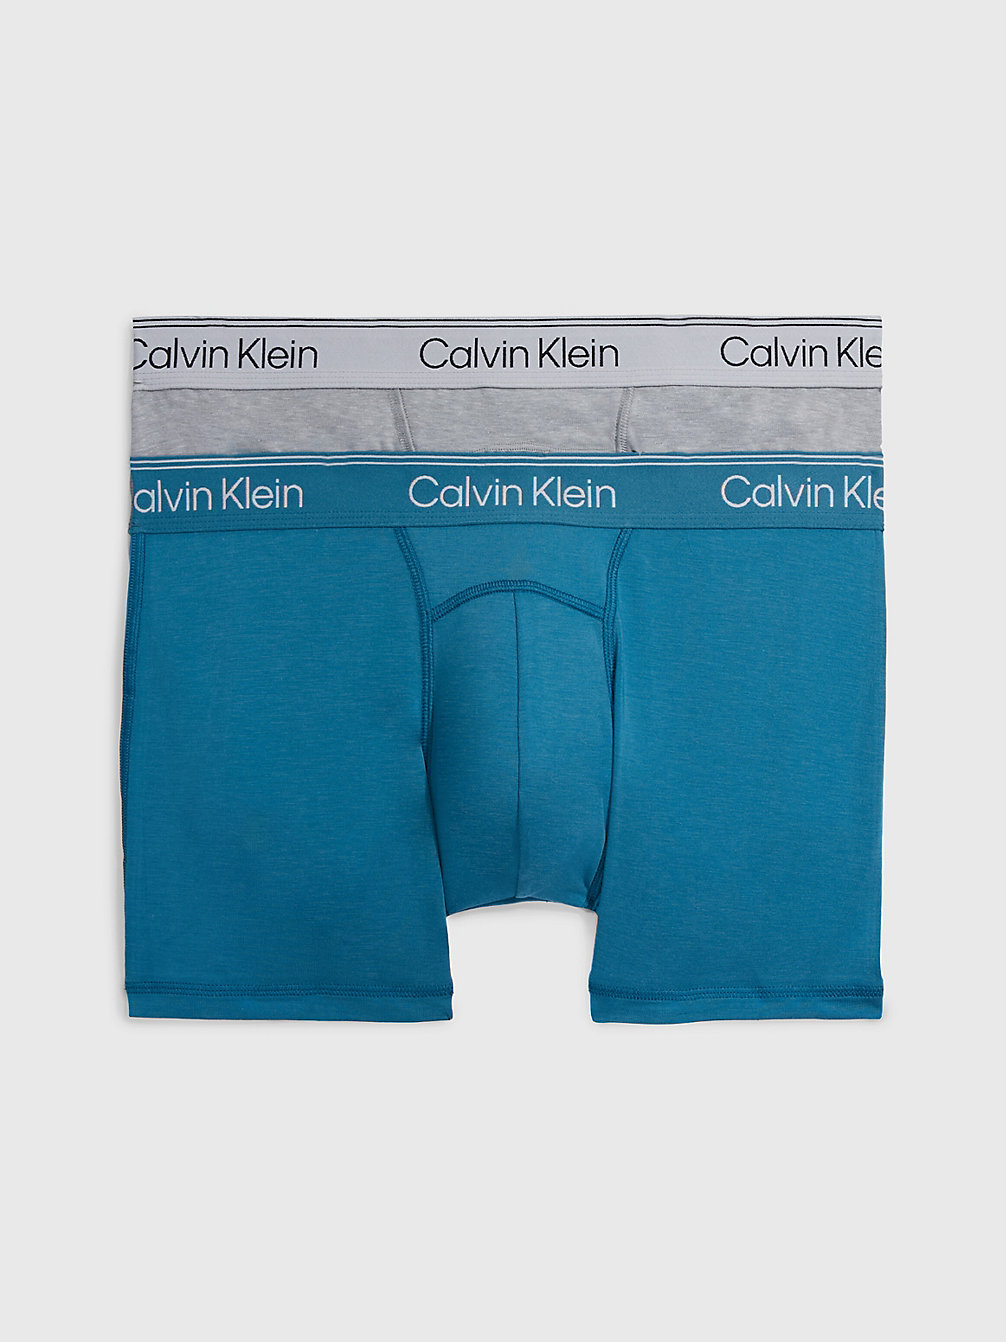 MIDNIGHT, ATHLETIC GREY HEATHER 2er-Pack Shorts - Athletic Cotton undefined Herren Calvin Klein